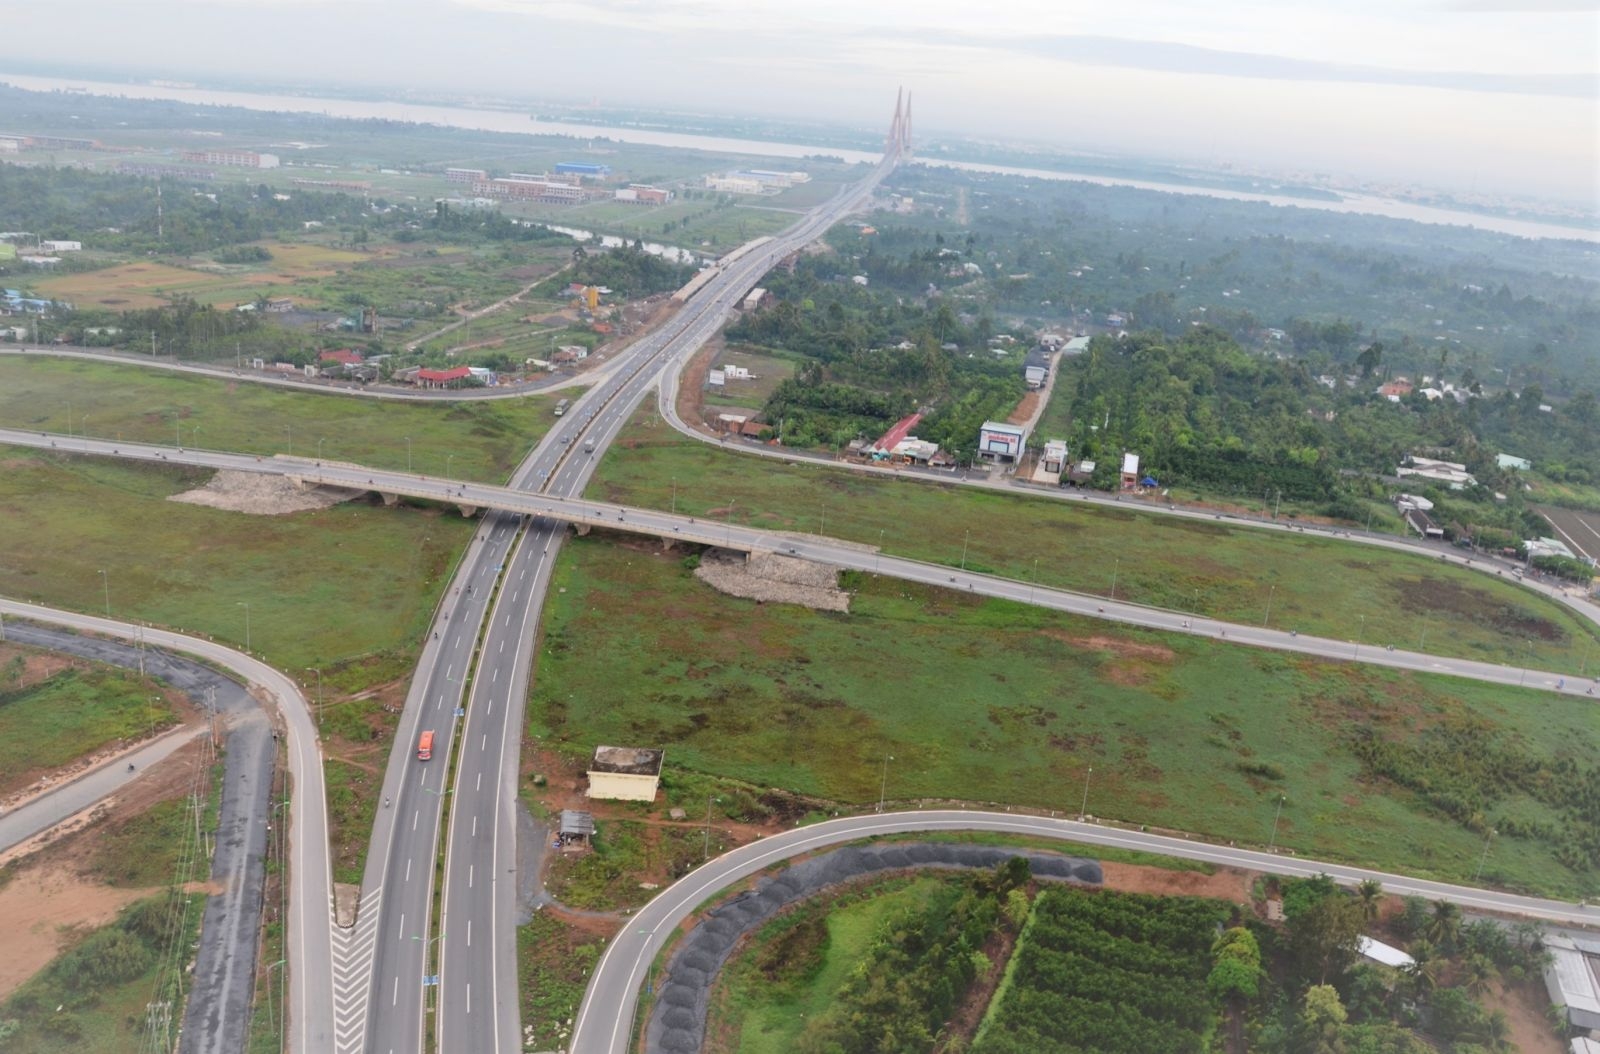 Xây dựng hạ tầng giao thông đường bộ tạo động lực thúc đẩy phát triển kinh tế - xã hội vùng Đồng bằng sông Cửu Long